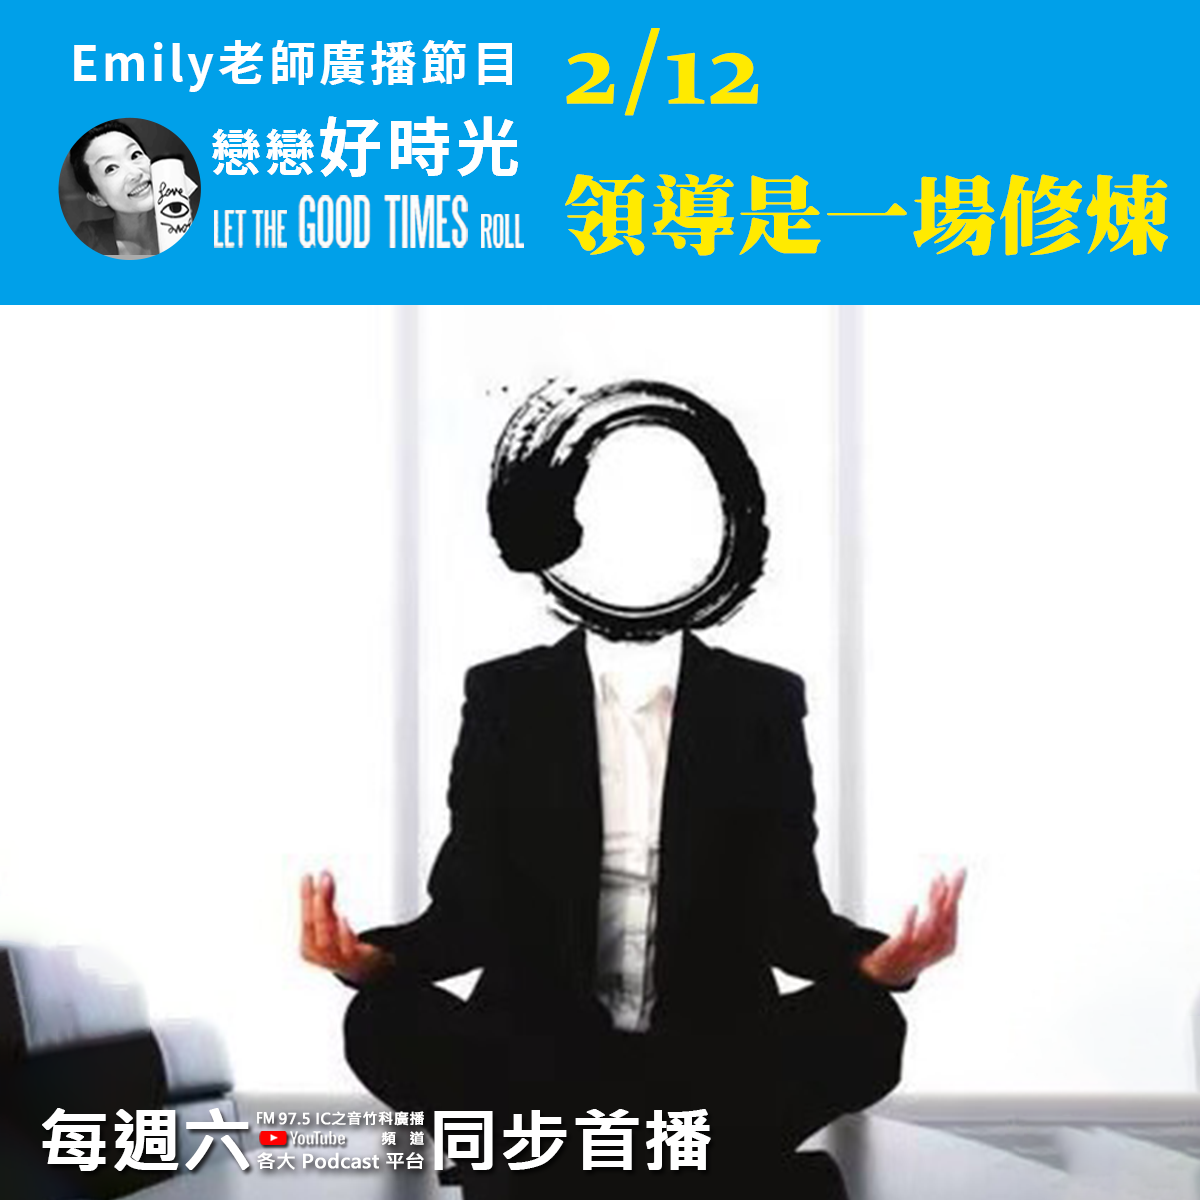 Emily老師「戀戀好時光」節目-2022/2/12-領導是一場修煉